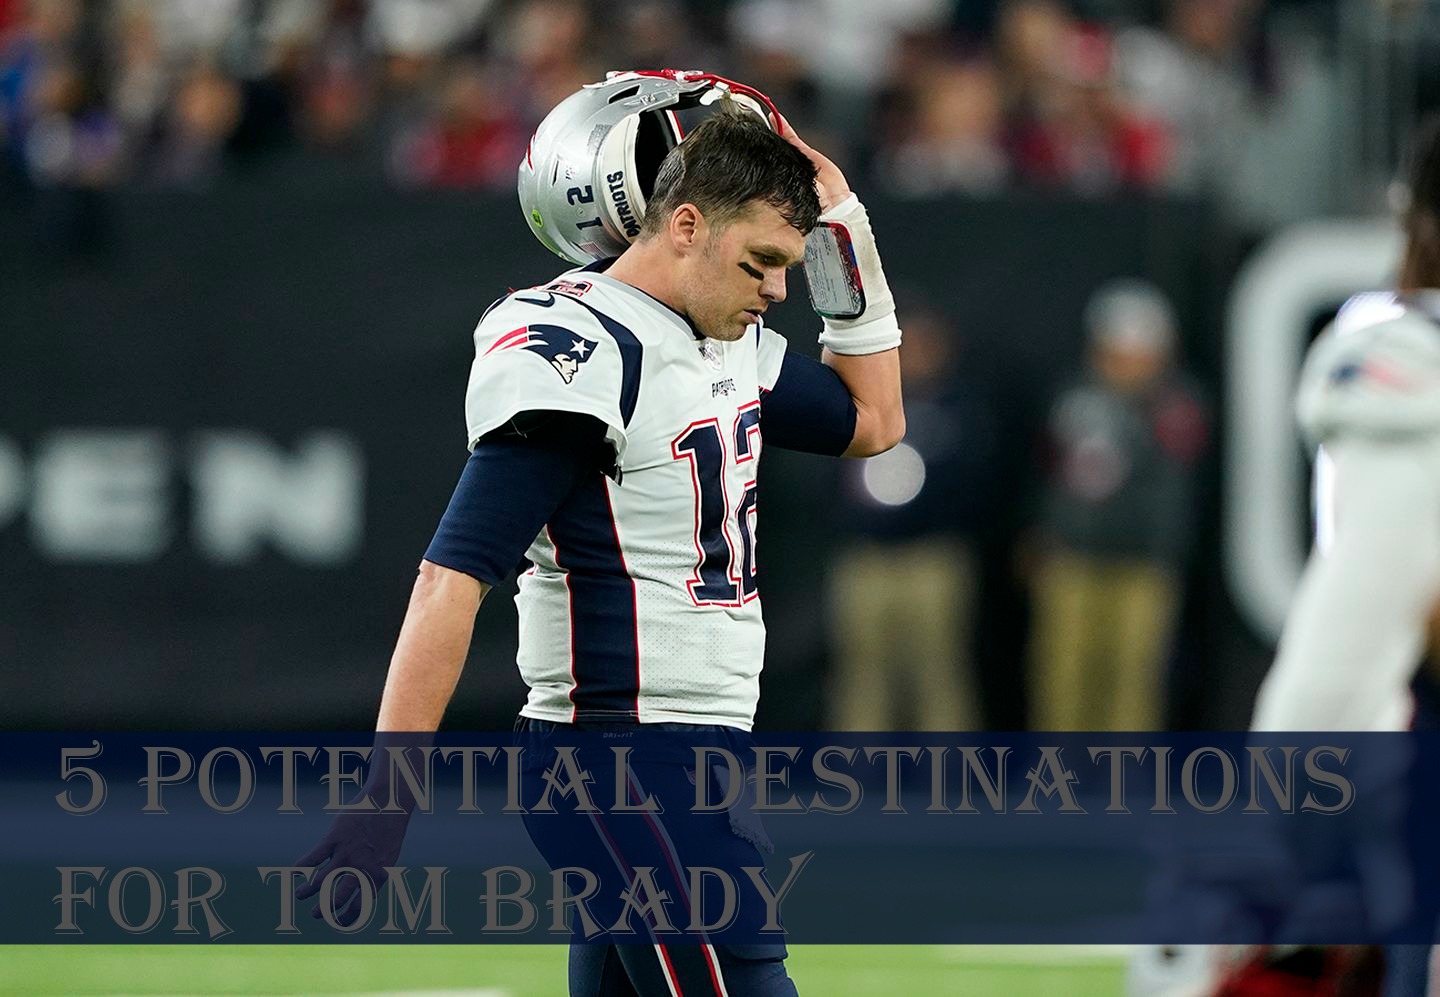 5 Potential Destinations for Tom Brady